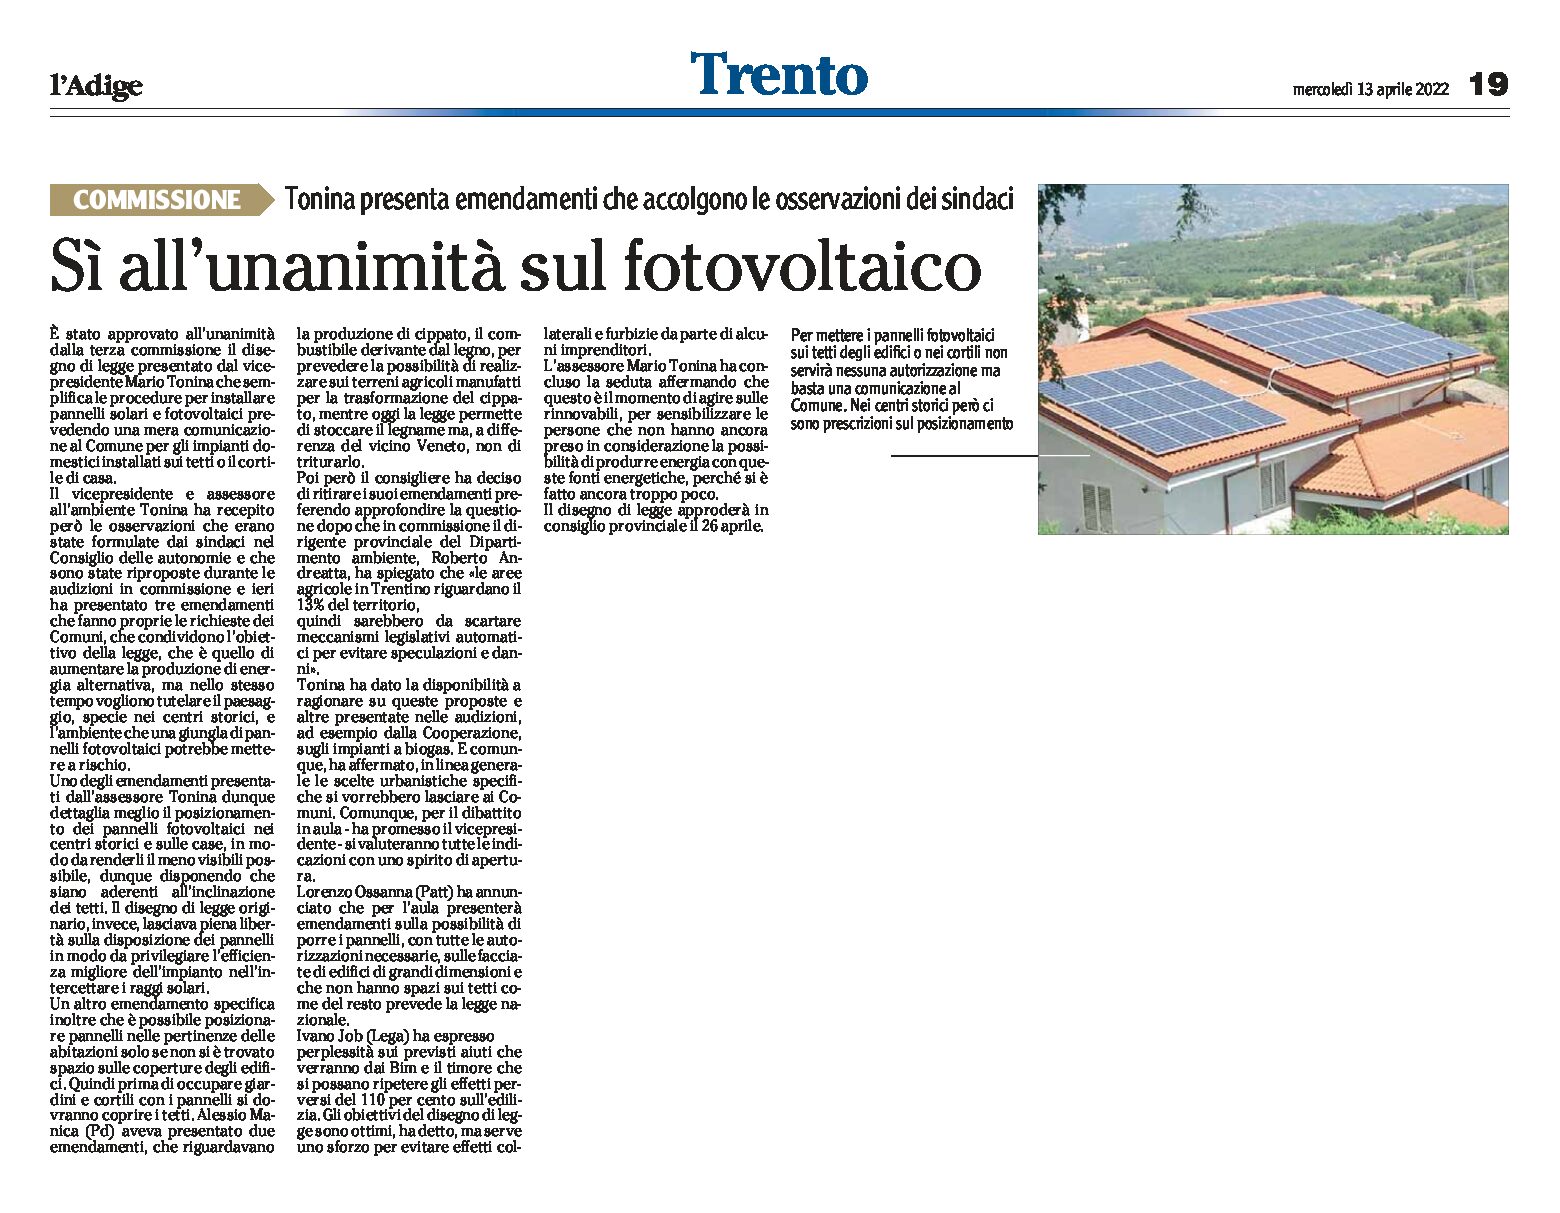 Fotovoltaico: sì all’unanimità. Tonina presenta emendamenti che accolgono le osservazioni dei sindaci